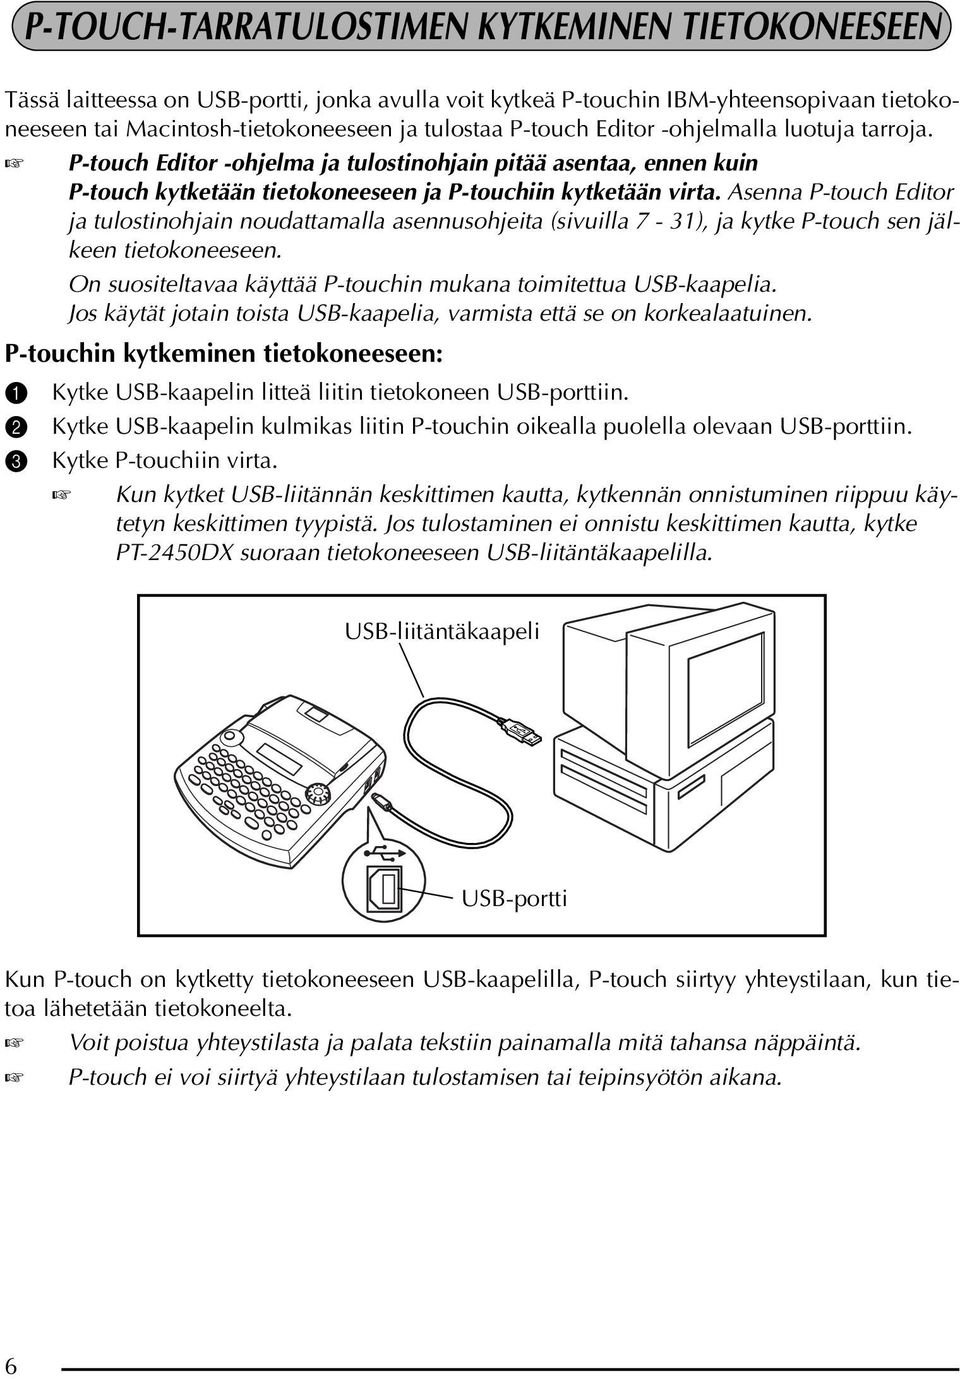 Asenna P-touch Editor ja tulostinohjain noudattamalla asennusohjeita (sivuilla 7-31), ja kytke P-touch sen jälkeen tietokoneeseen. On suositeltavaa käyttää P-touchin mukana toimitettua USB-kaapelia.